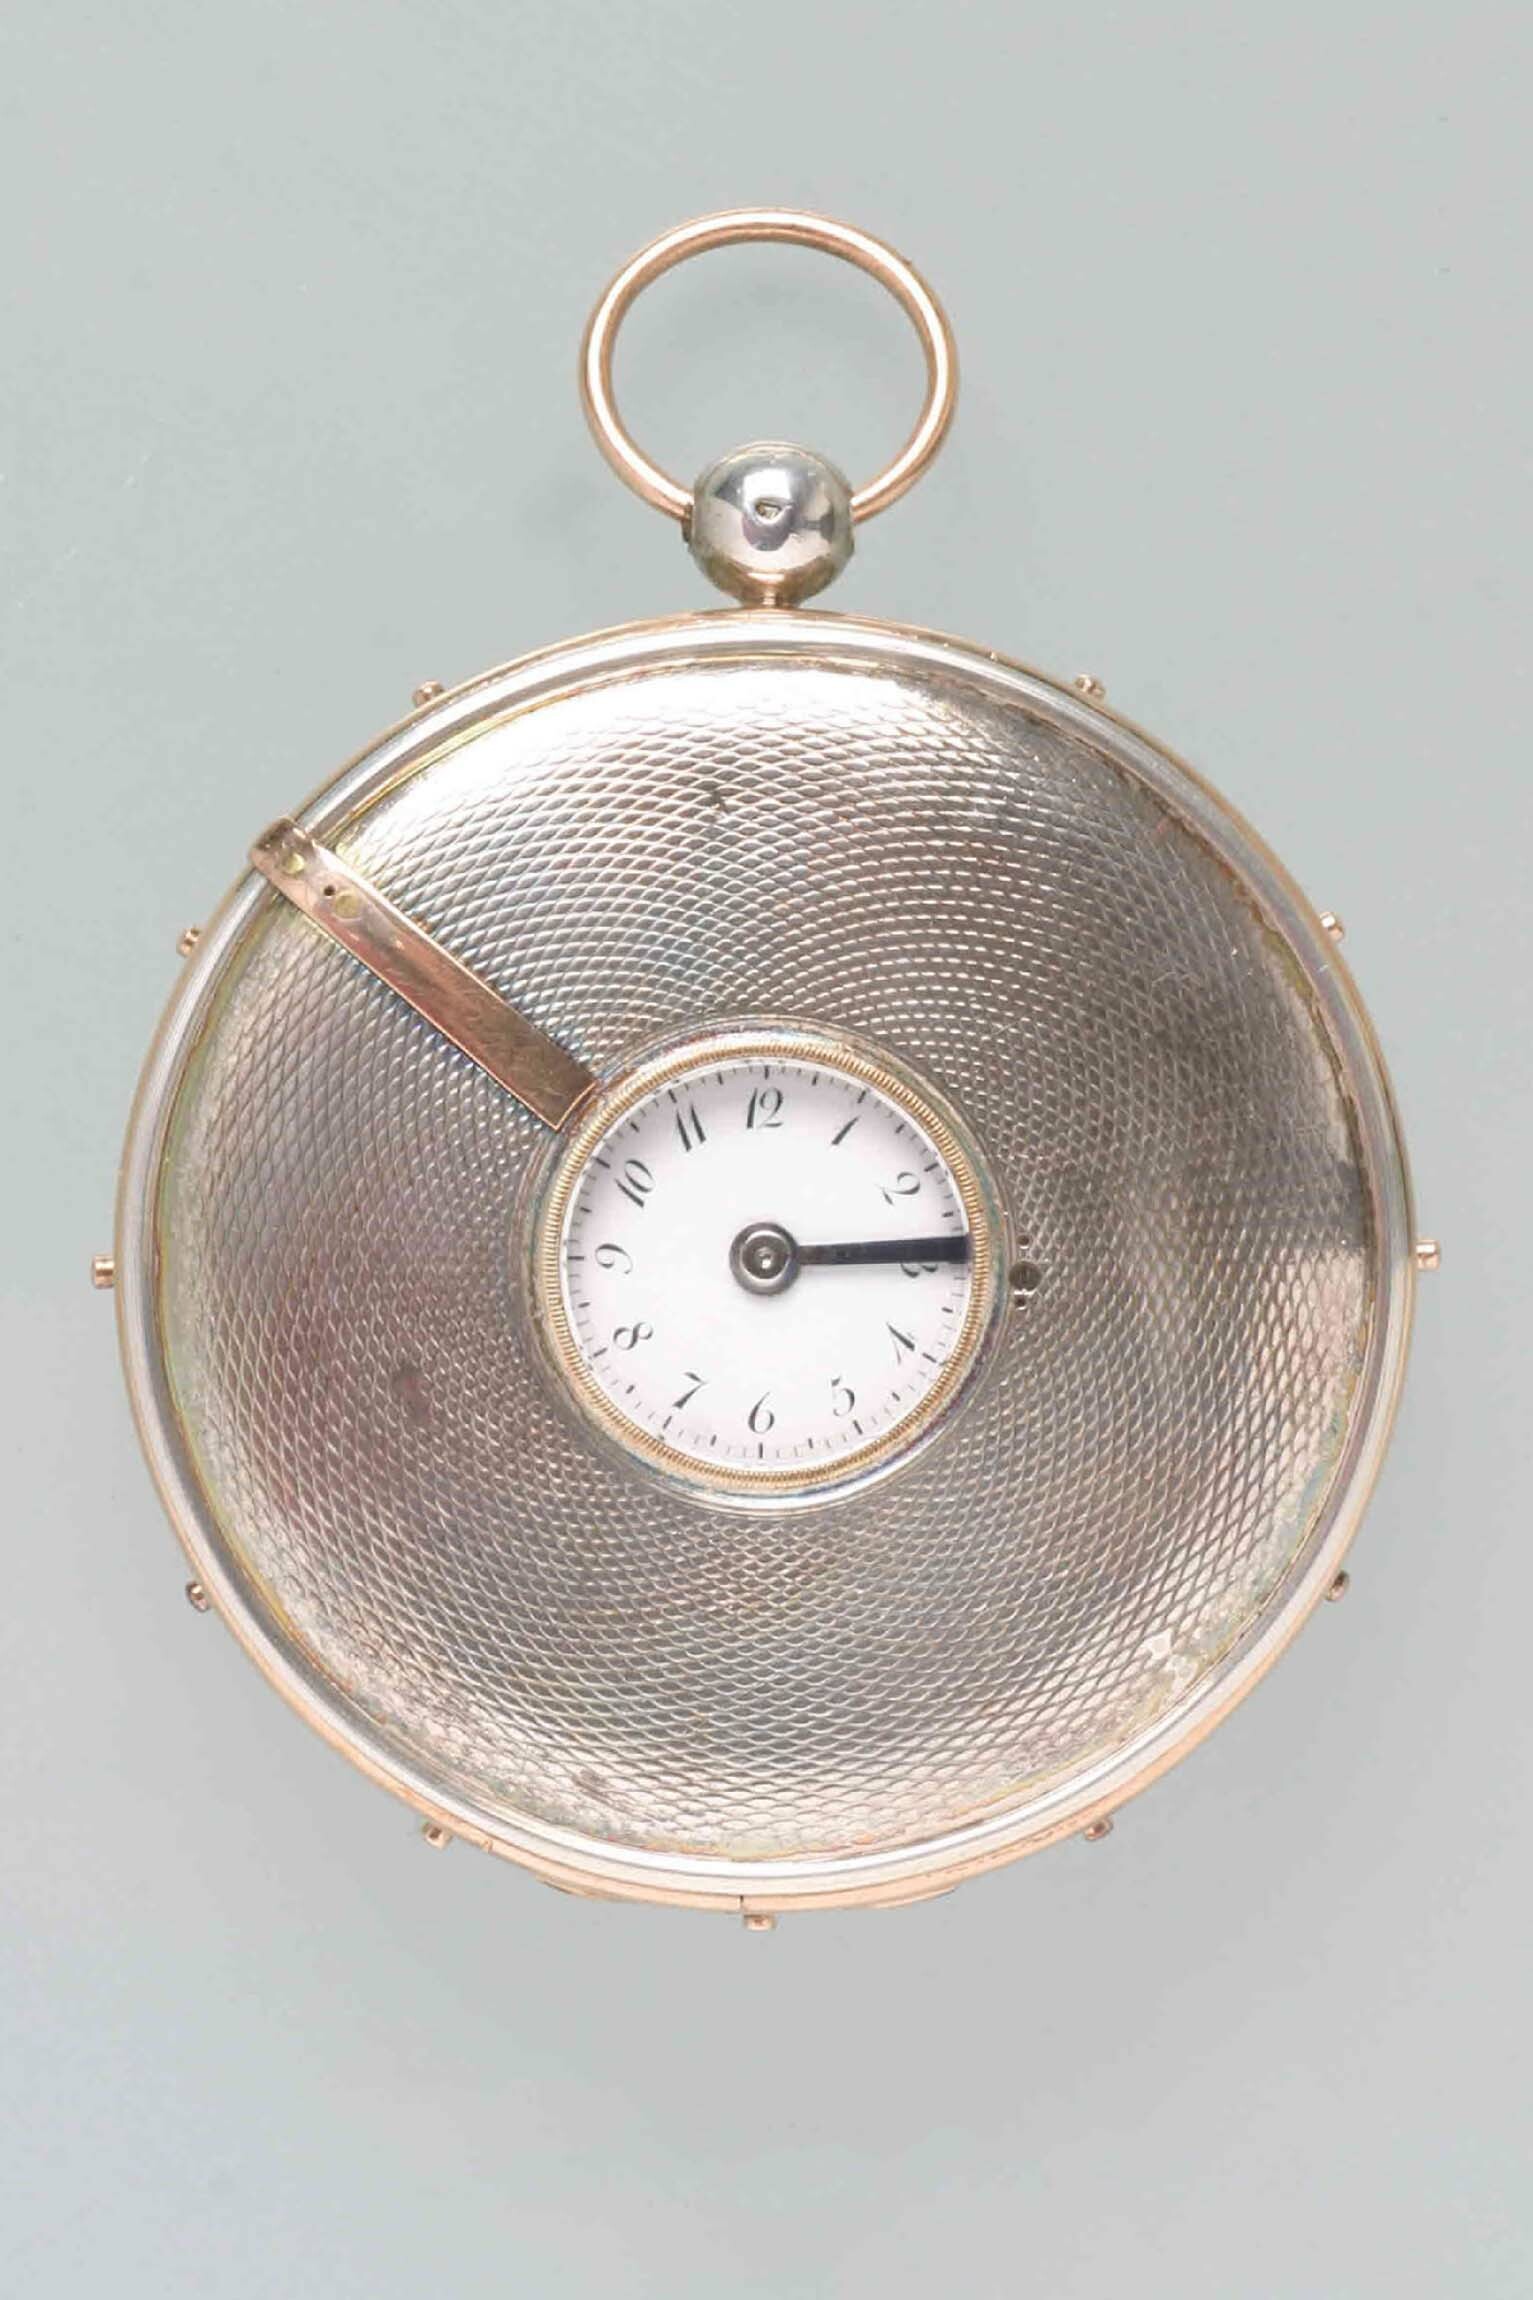 Taschenuhr, Breguet et Fils, Paris, um 1800 (Deutsches Uhrenmuseum CC BY-SA)